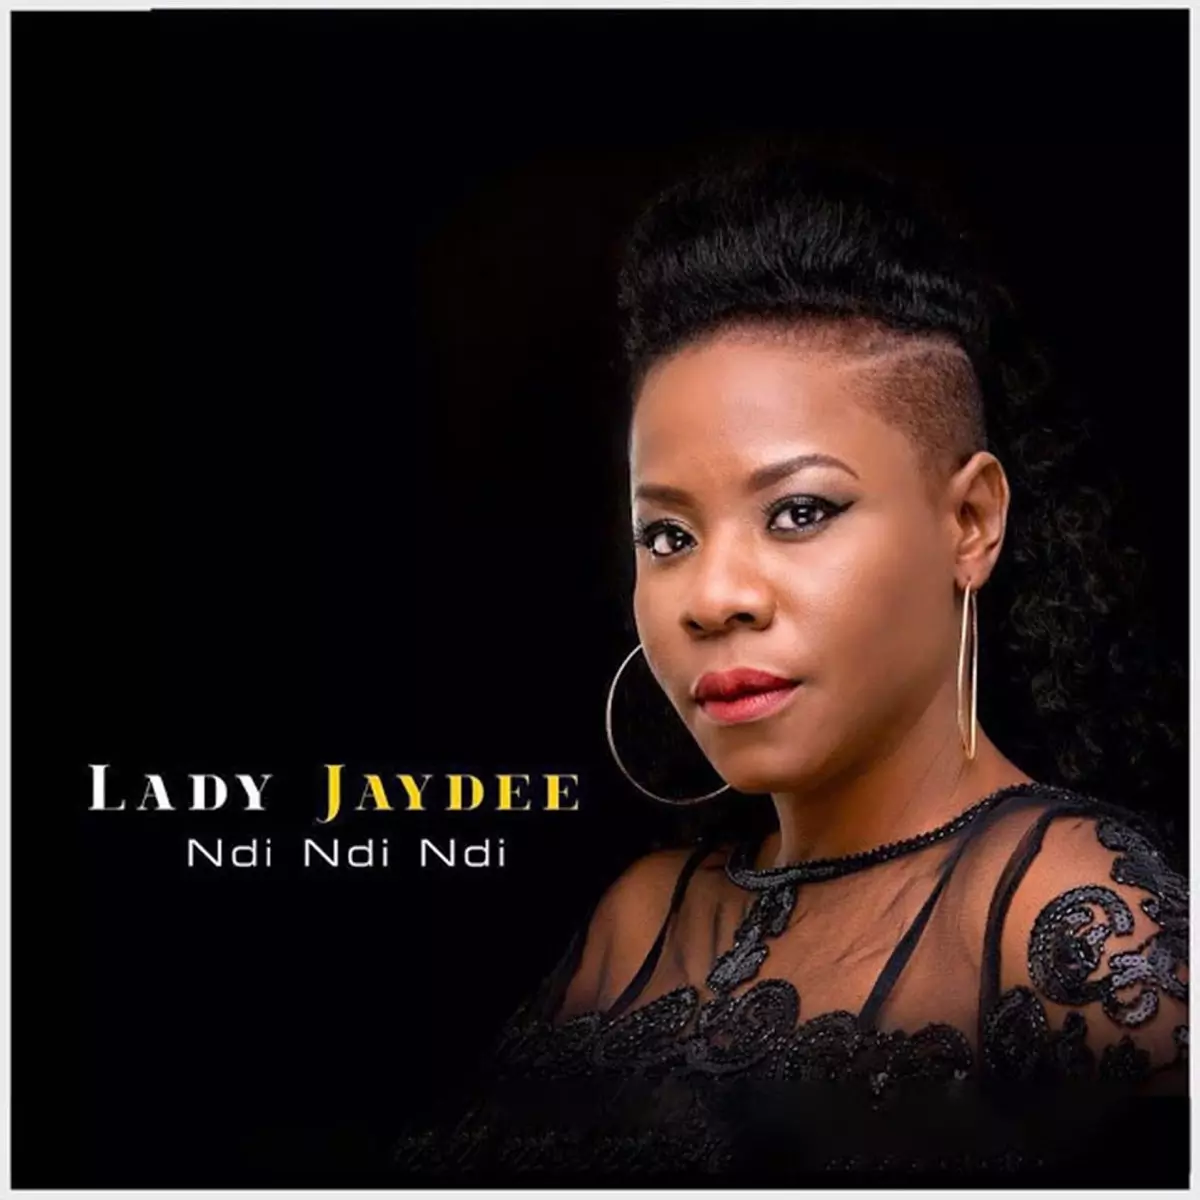 Ndi Ndi Ndi - Single by Lady Jaydee on Apple Music